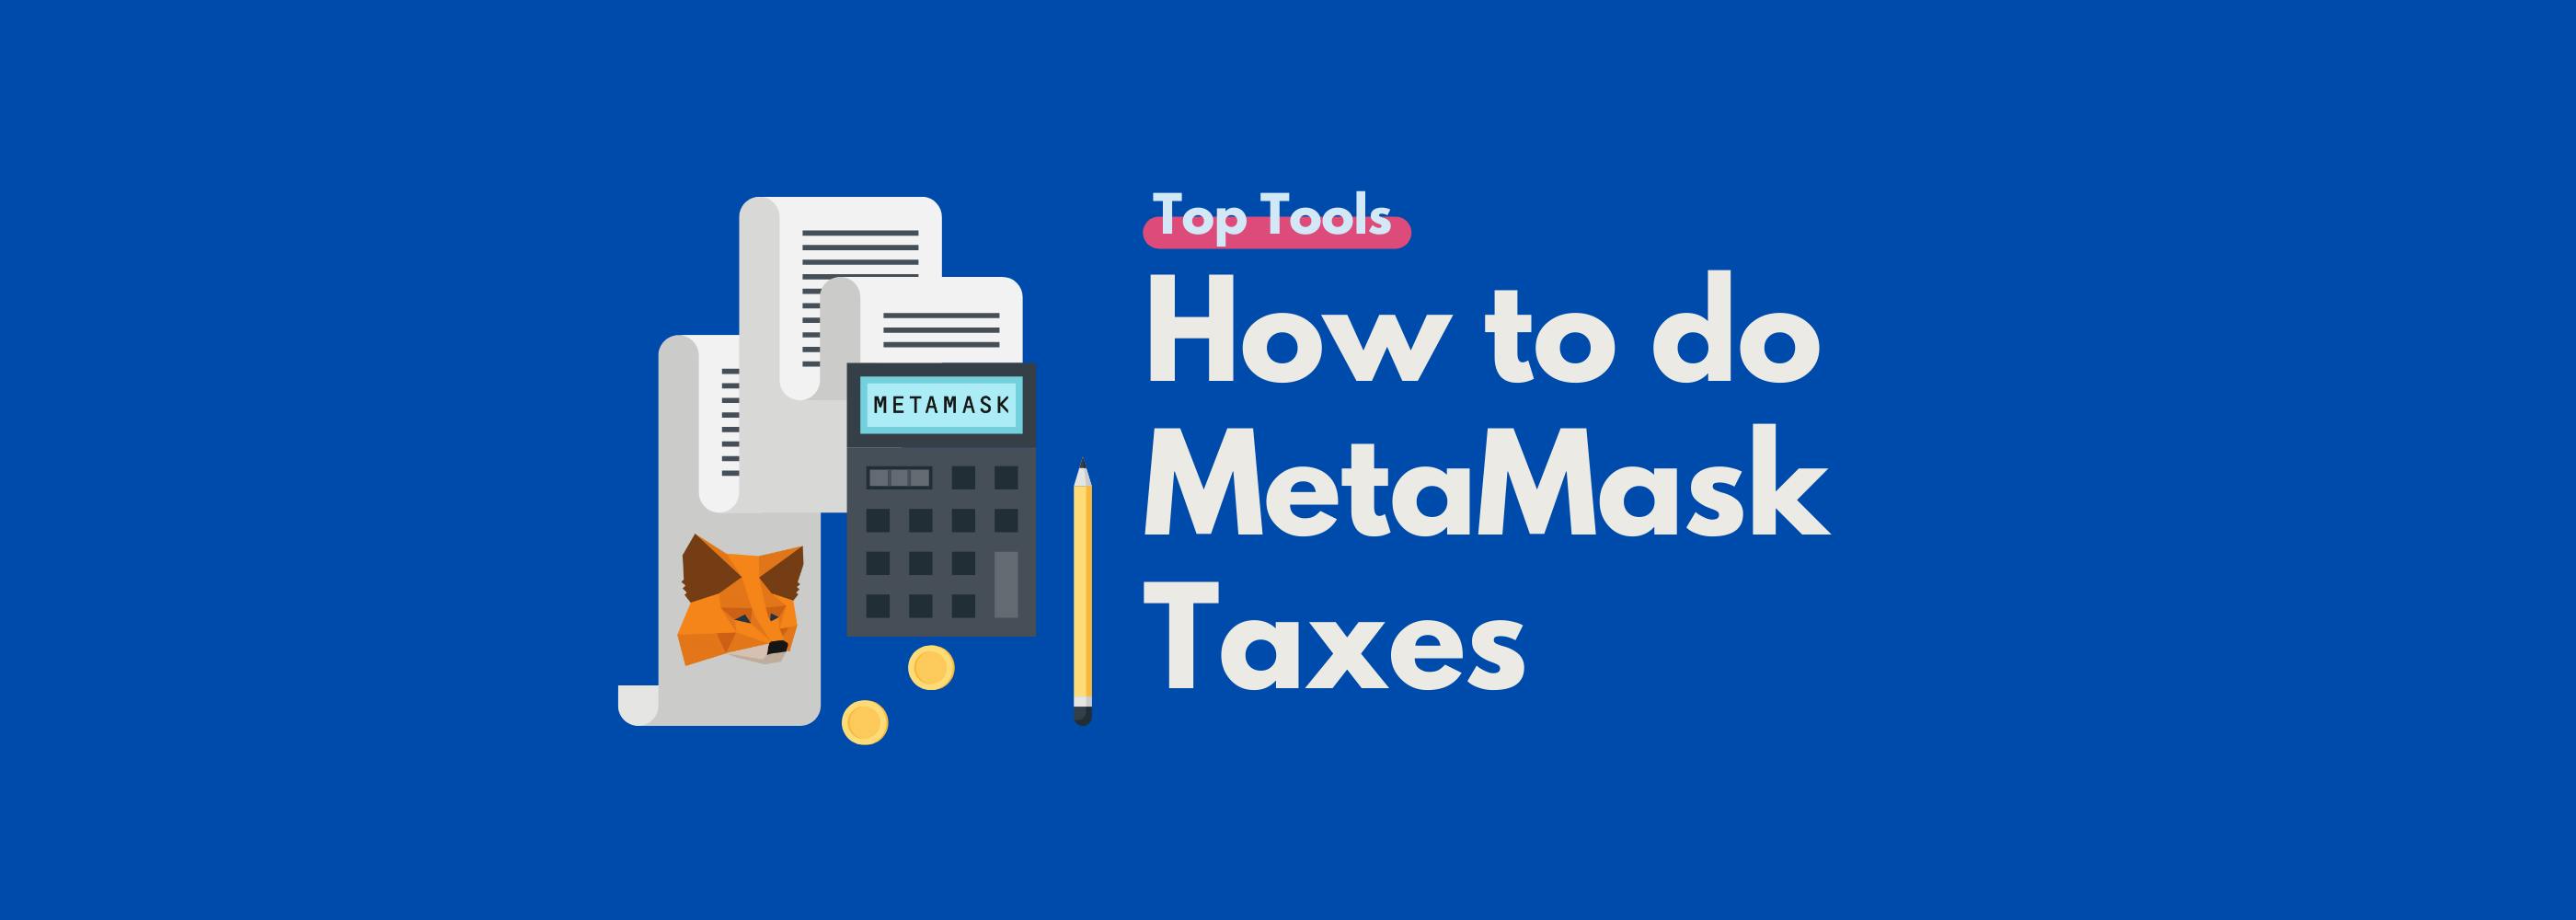 MetaMask tax guide